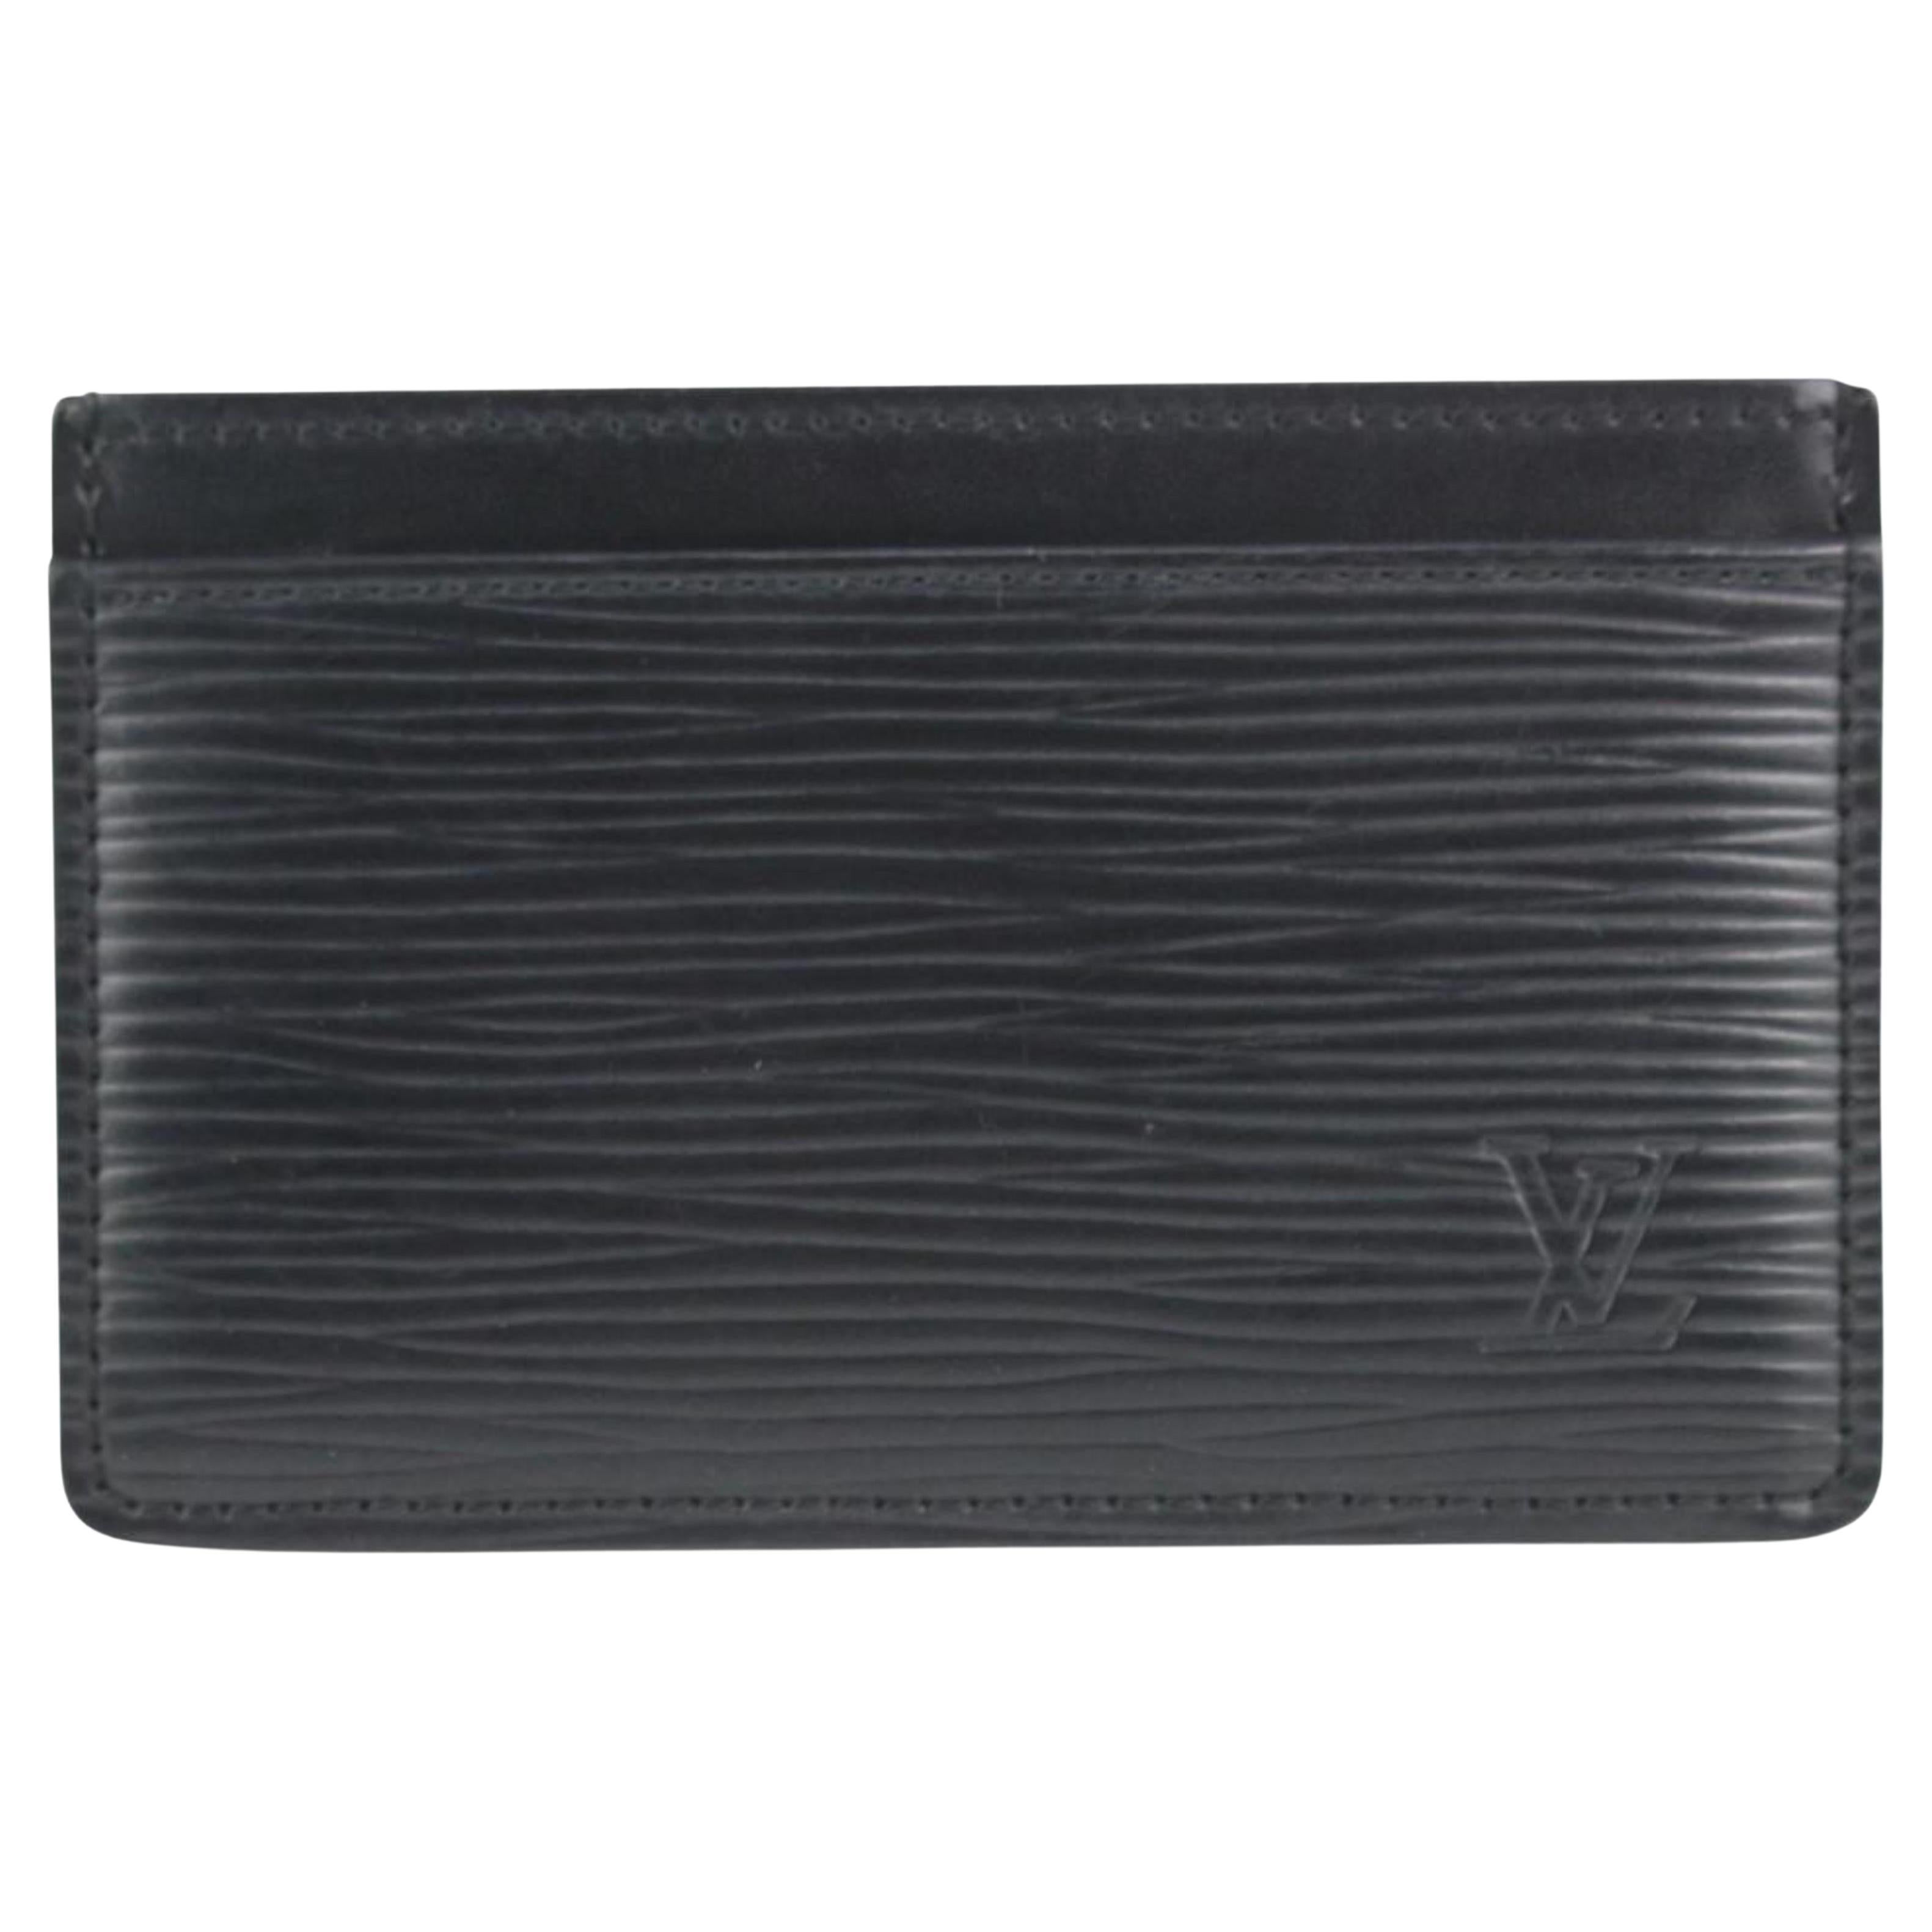 Louis Vuitton Black Epi Leather Noir Card Holder Porte Cartes 1029lv39